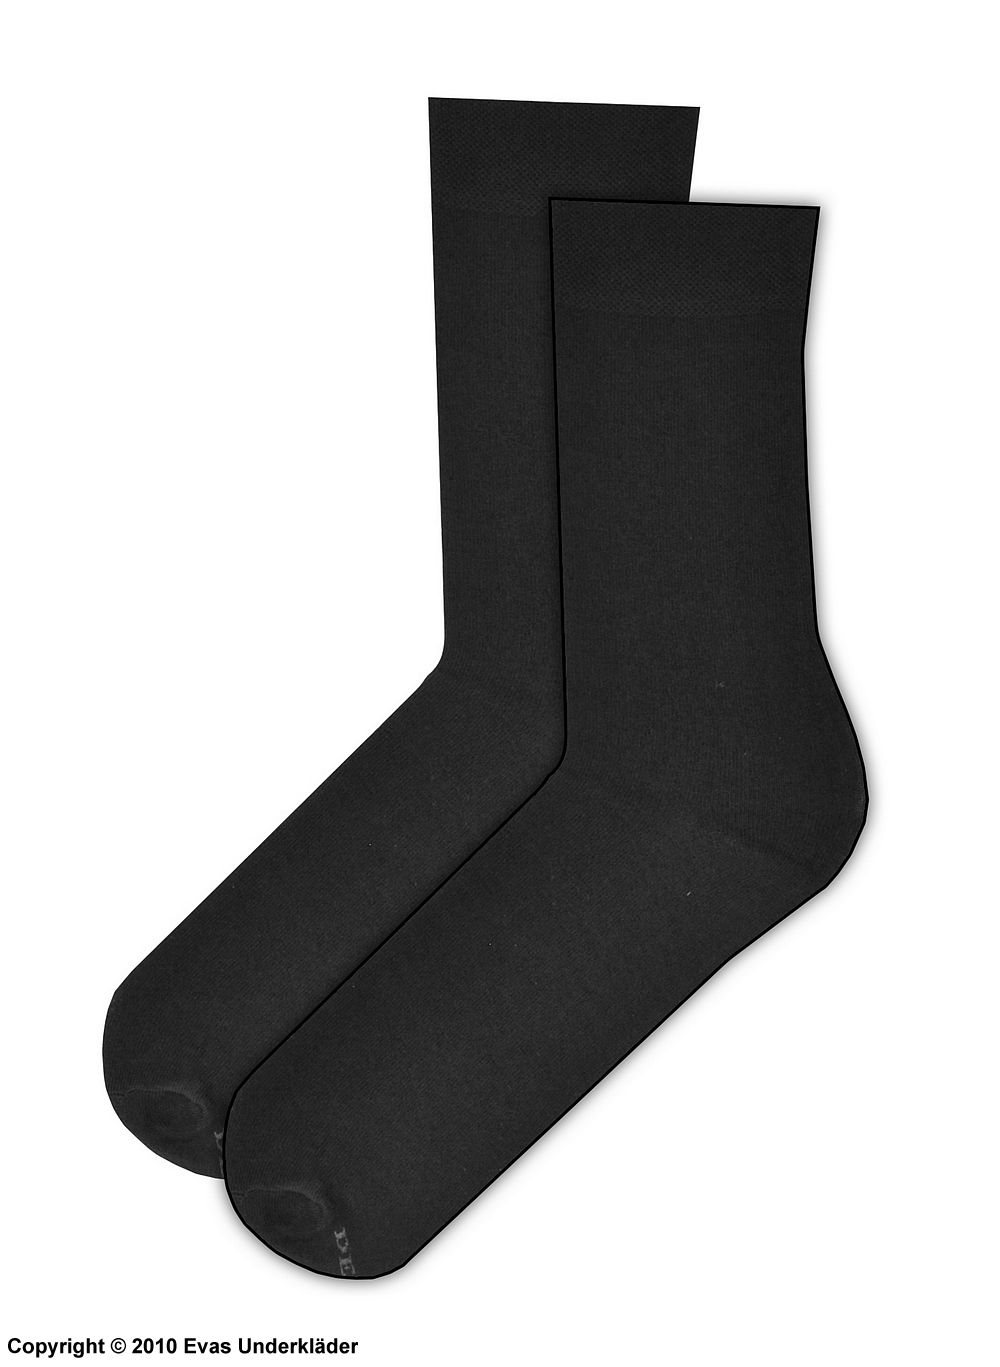 Comfortable men's socks, non-restrictive cuffs, flat seam